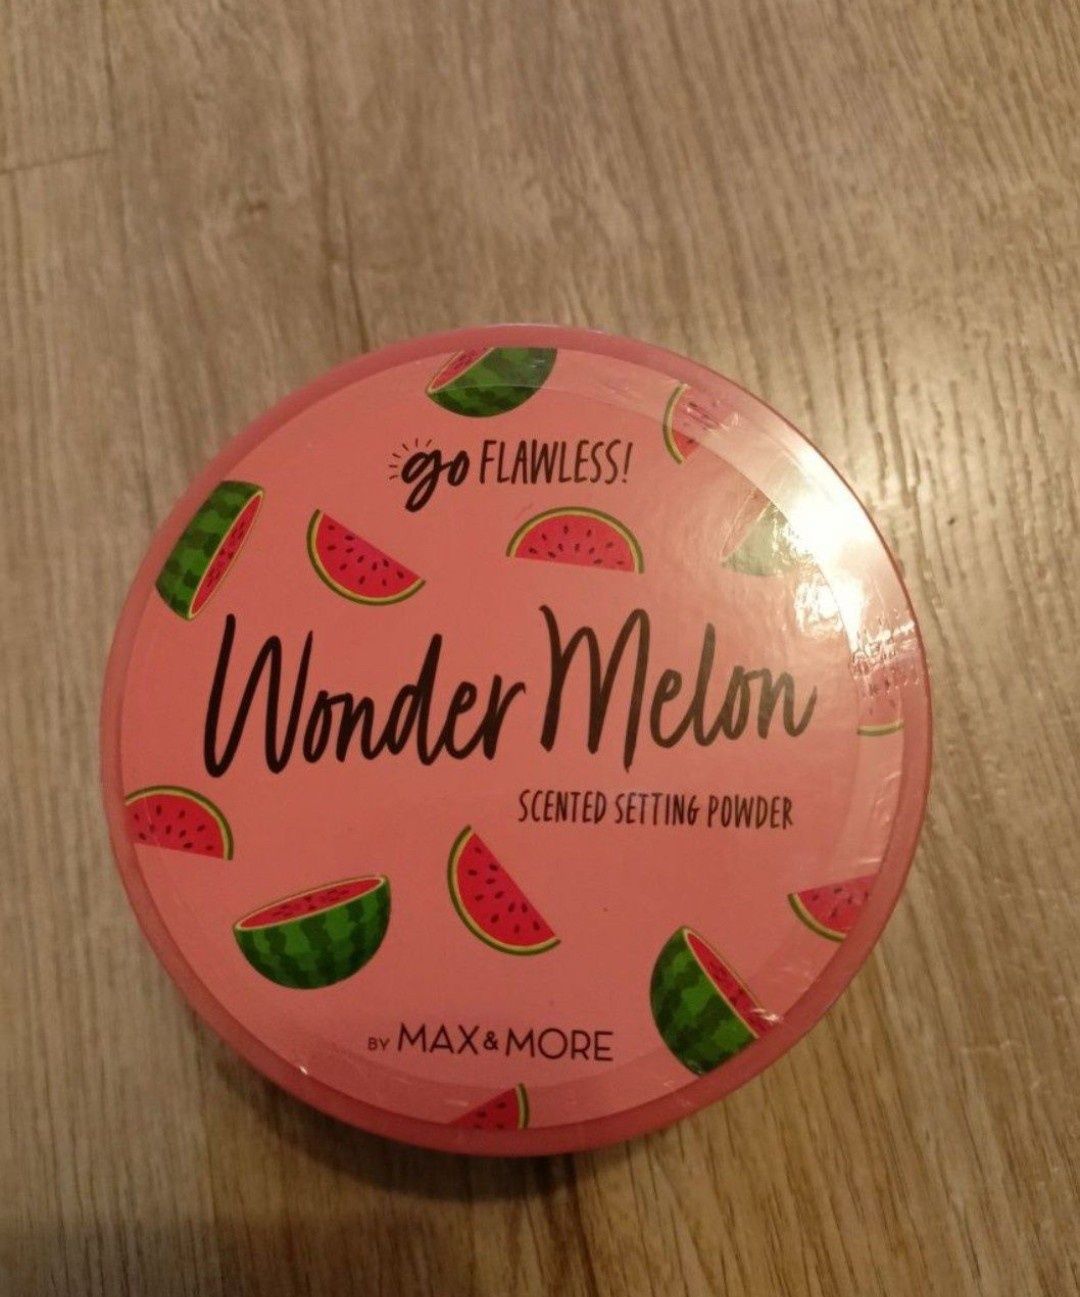 Sprzedam nowy puder Wonder Melon.